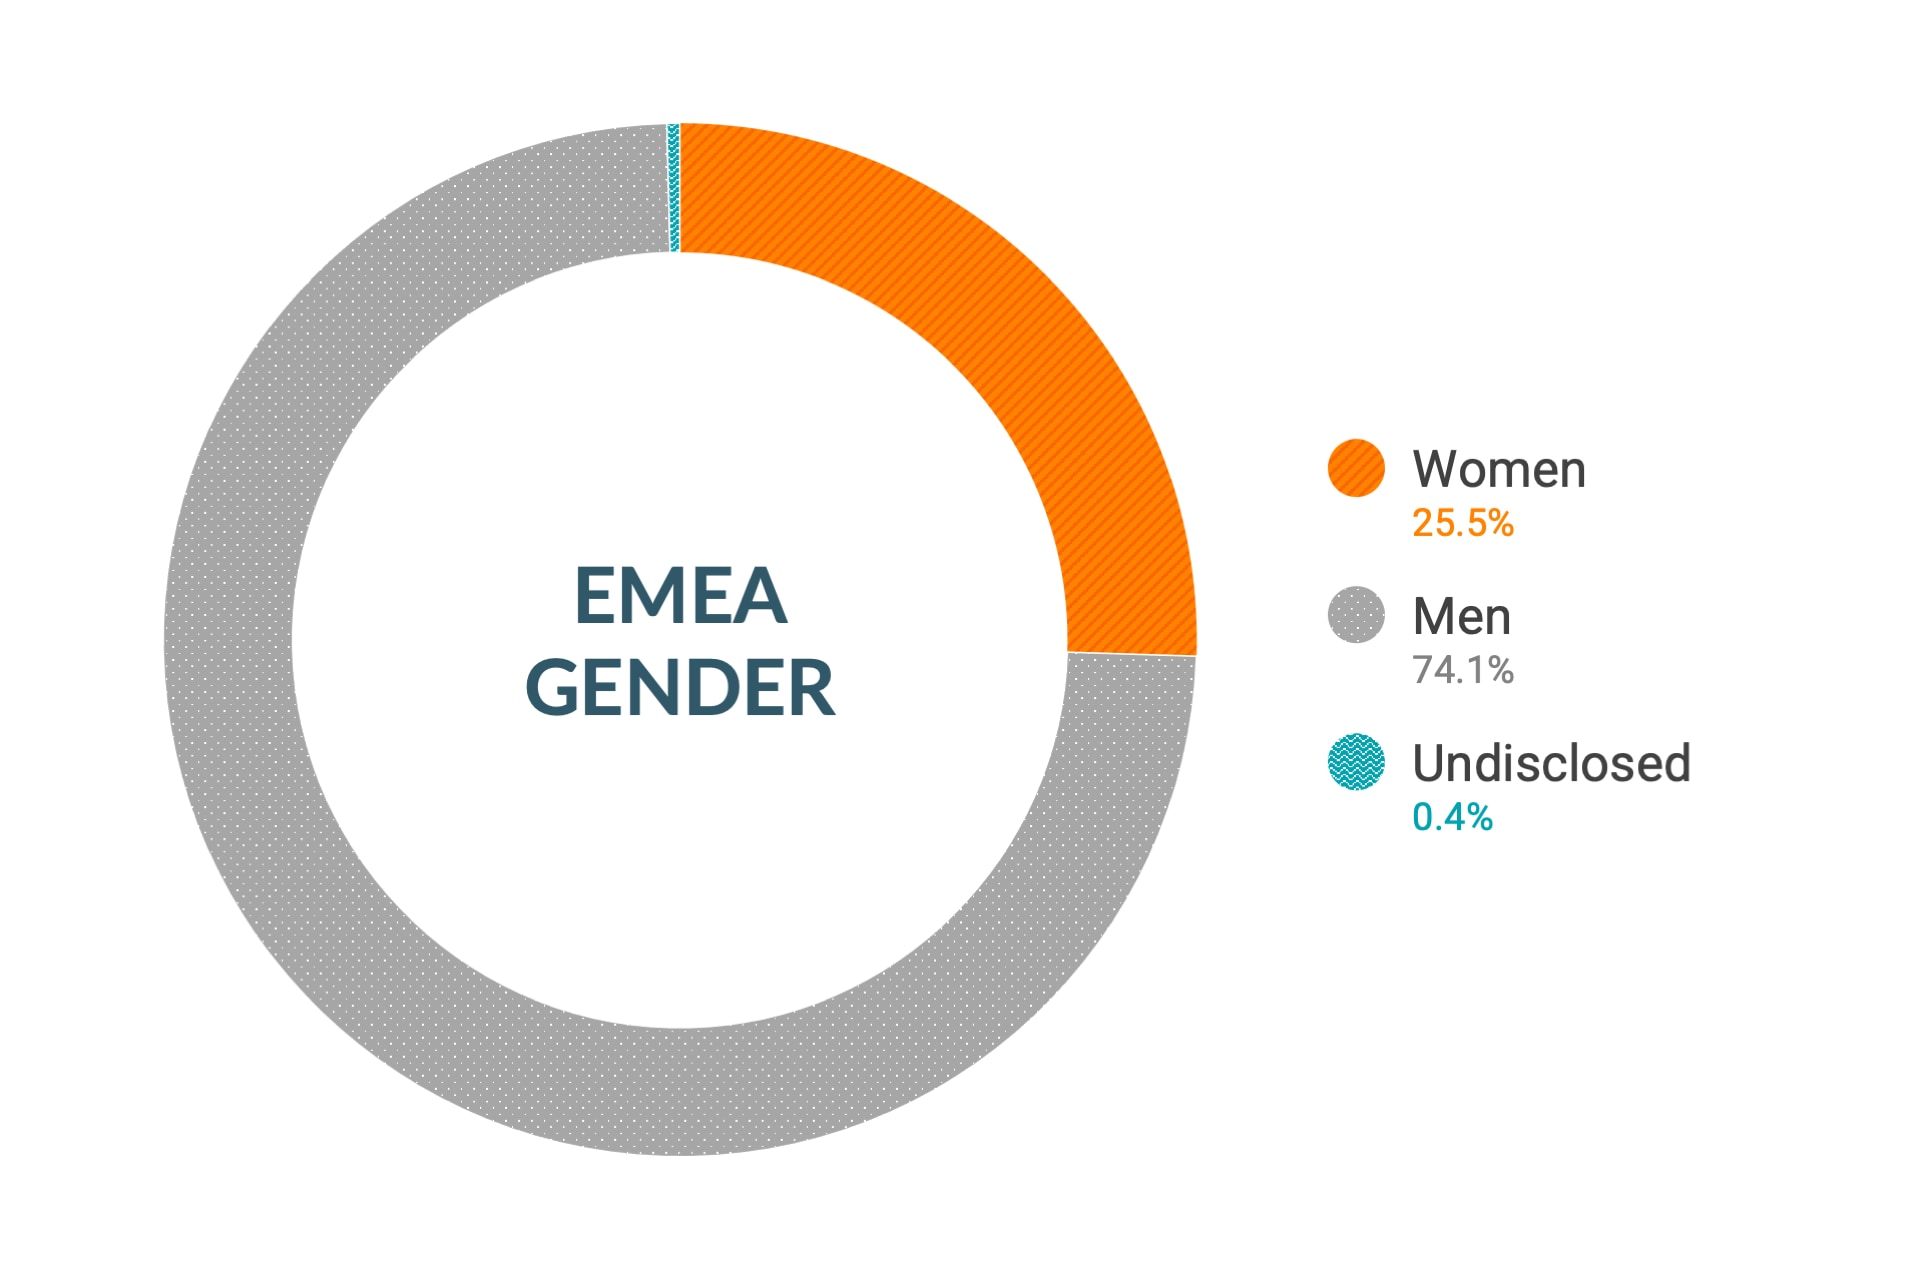 Dane firmy Cloudera dotyczące różnorodności i integracji dla płci w regionie Europa, Bliski Wschód i Afryka: kobiety 26,8%, mężczyźni 72,8%, nieujawnione 0,4%